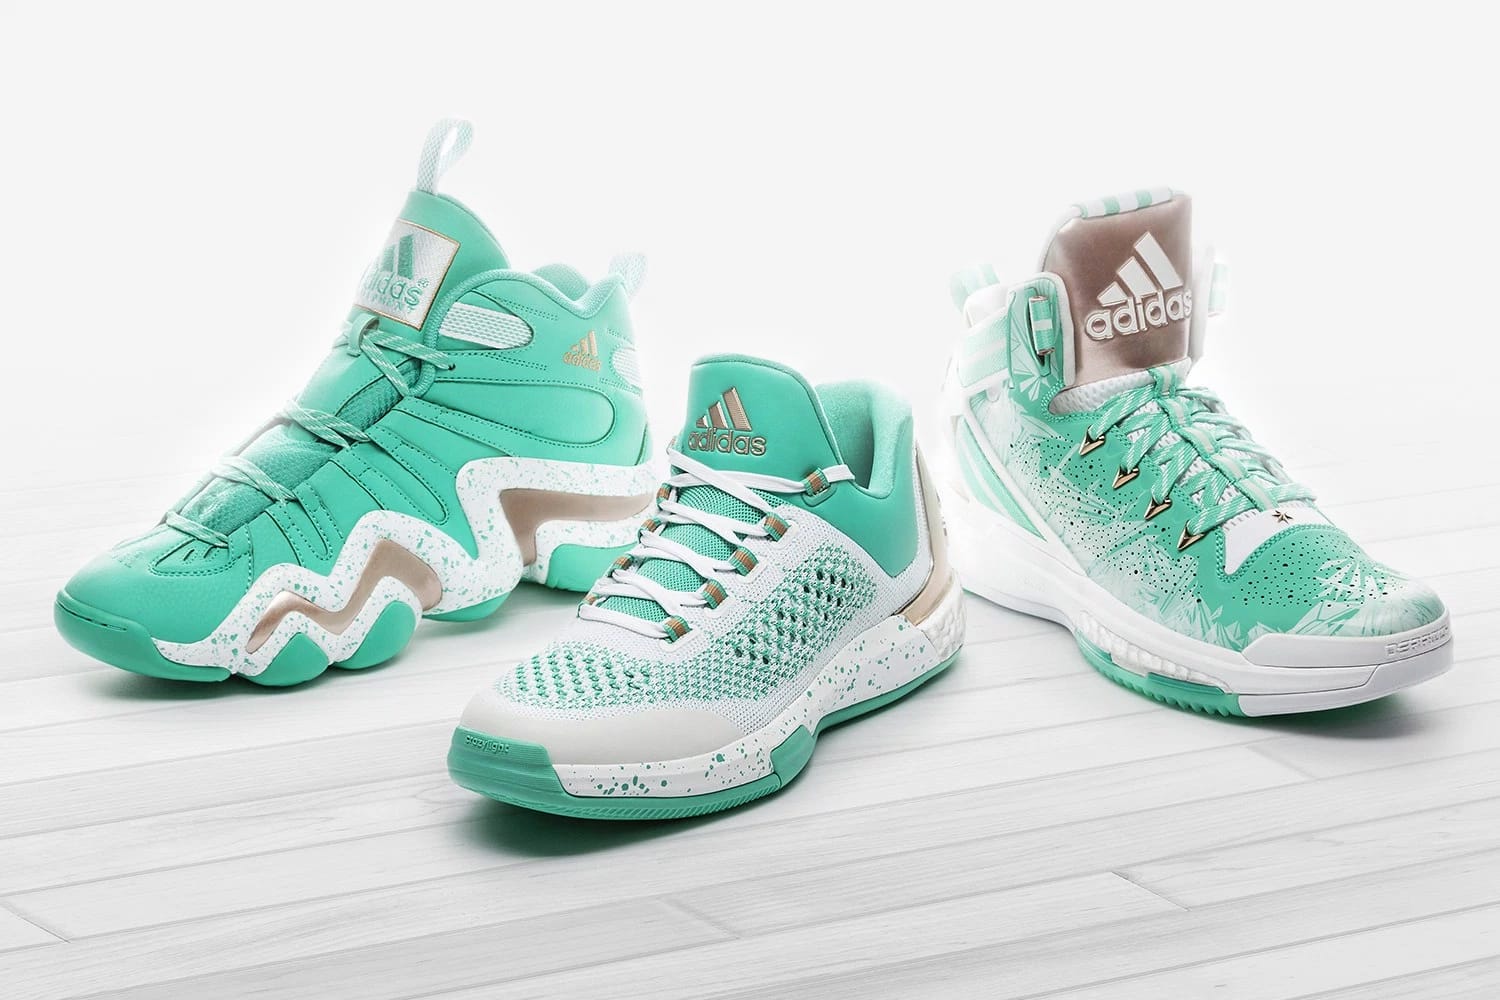 adidas Basketball 2015 Christmas Pack 